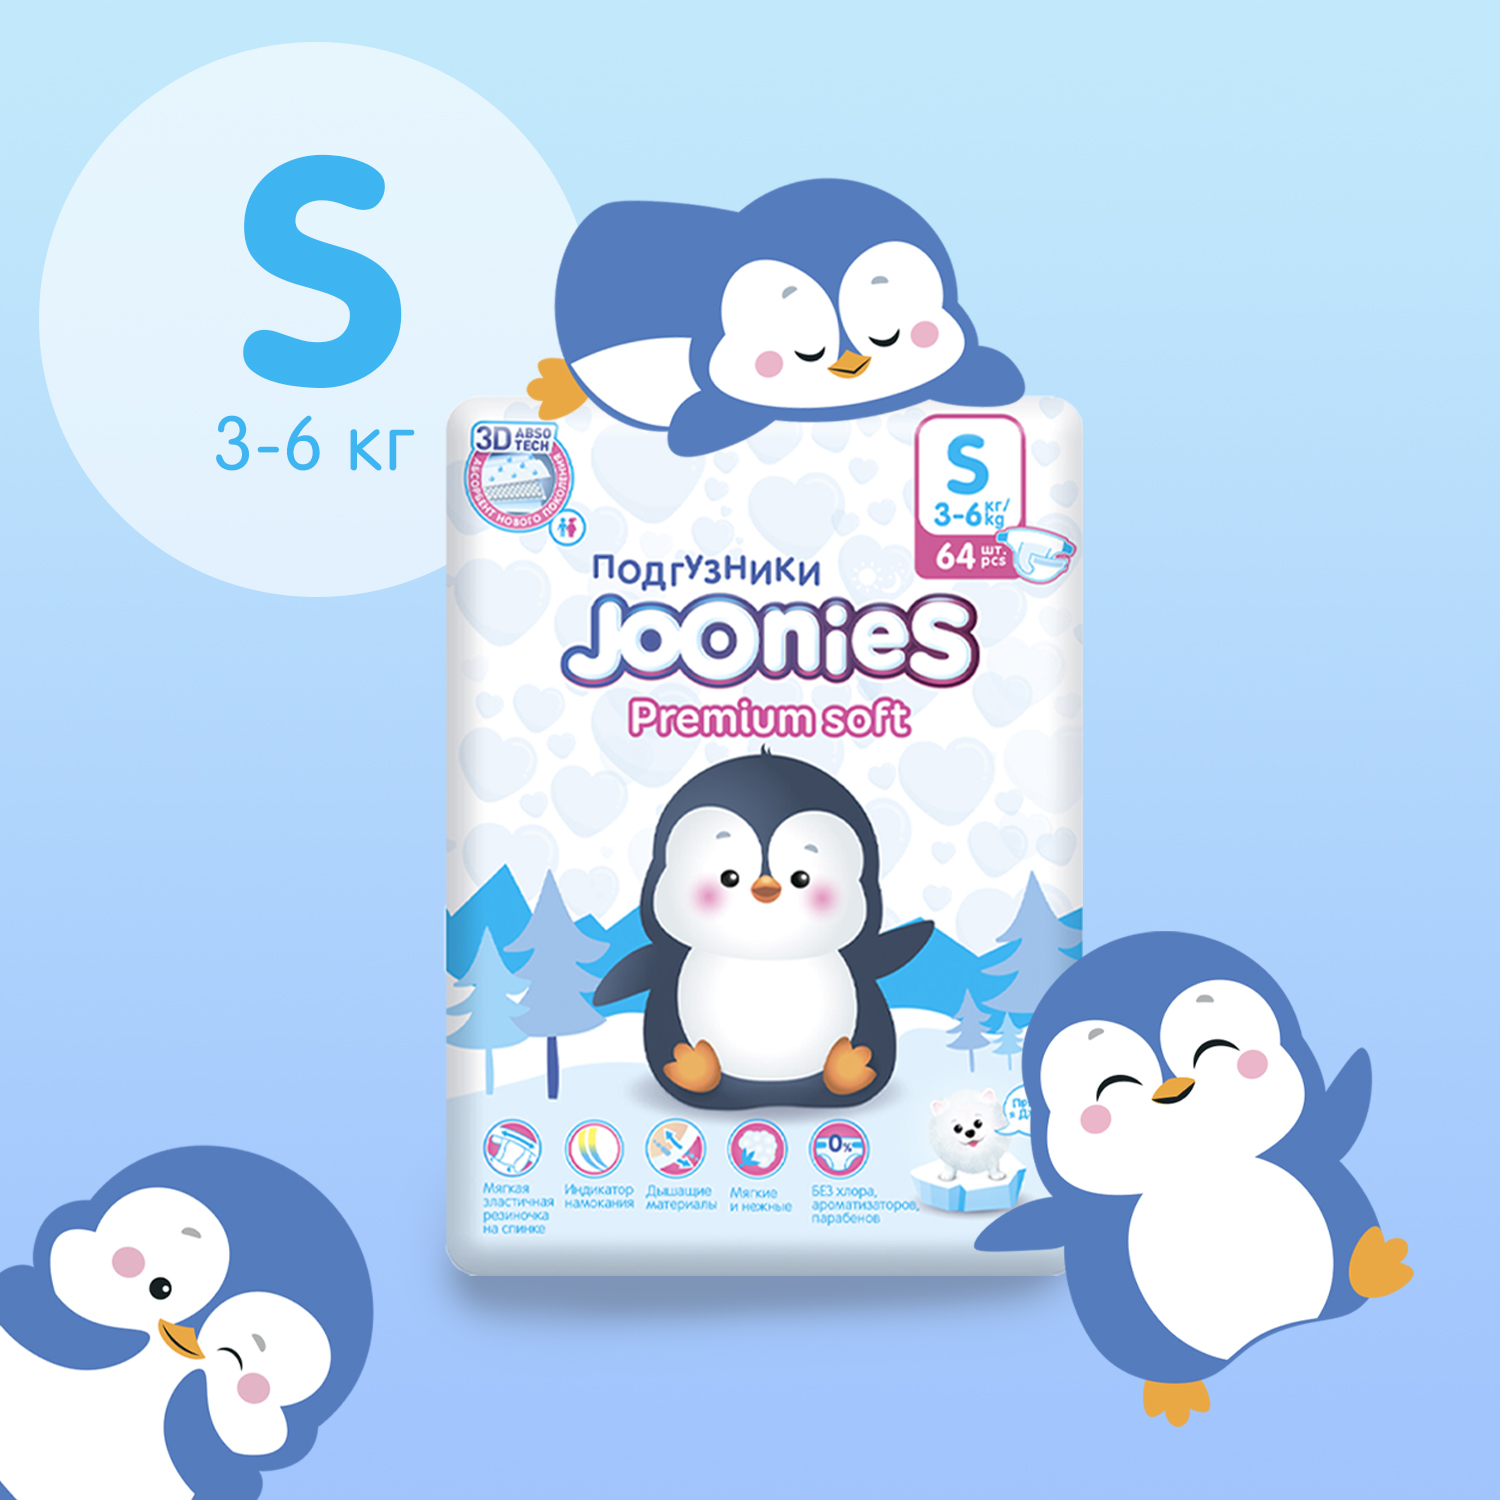 Подгузники Joonies Premium Soft S 3-6кг 64шт - фото 2